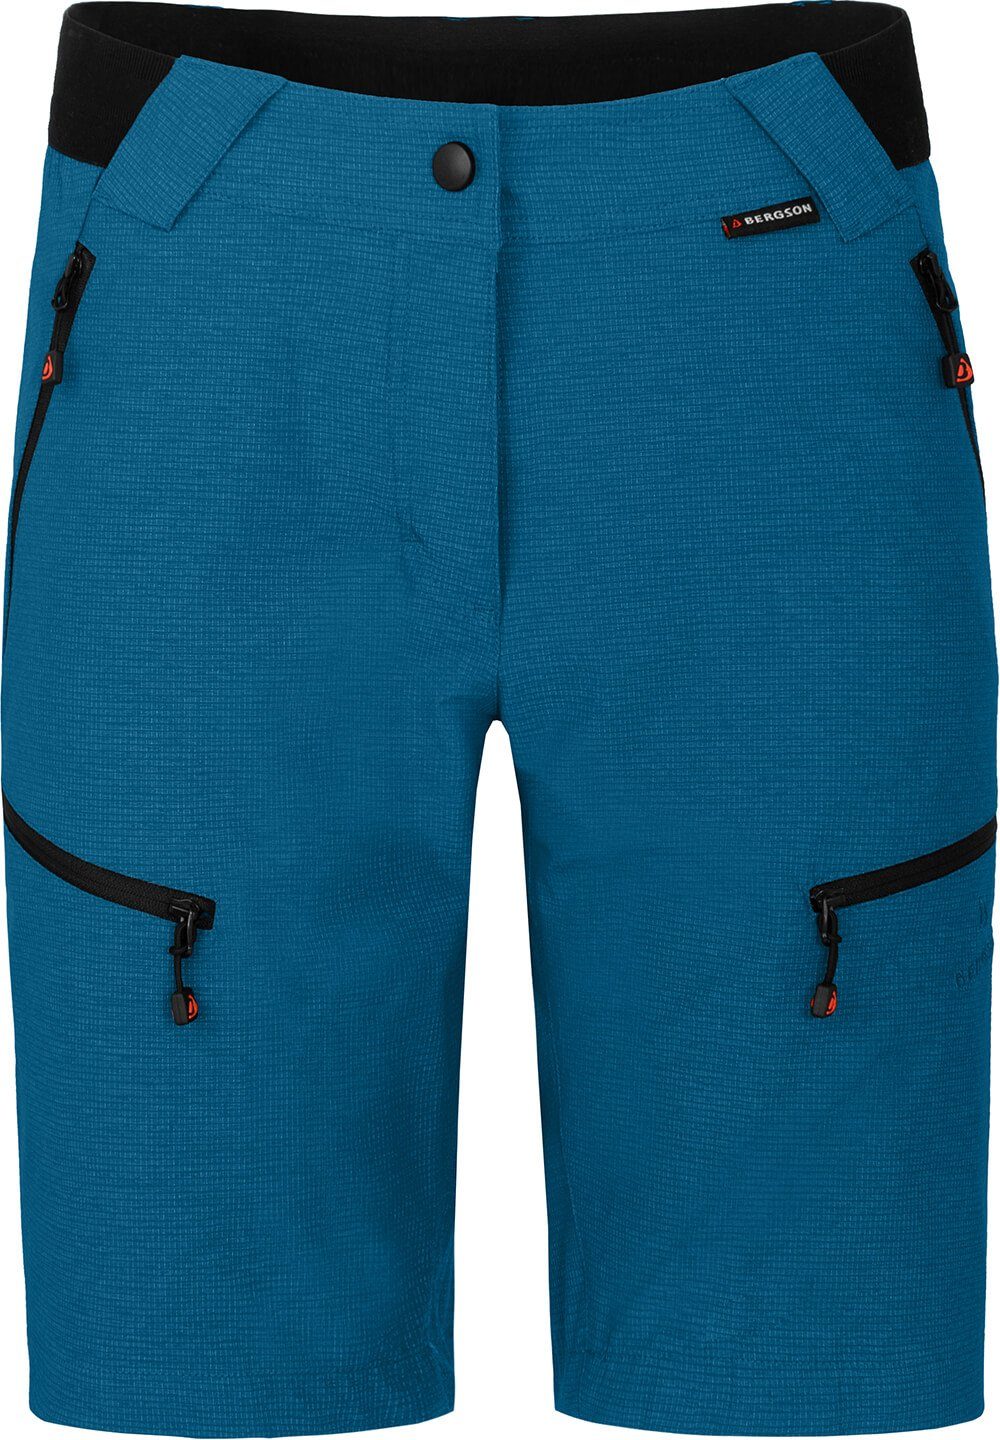 Bergson Outdoorhose PORI Bermuda Damen Wandershorts, robust, elastisch, Normalgrößen, Saphir blau